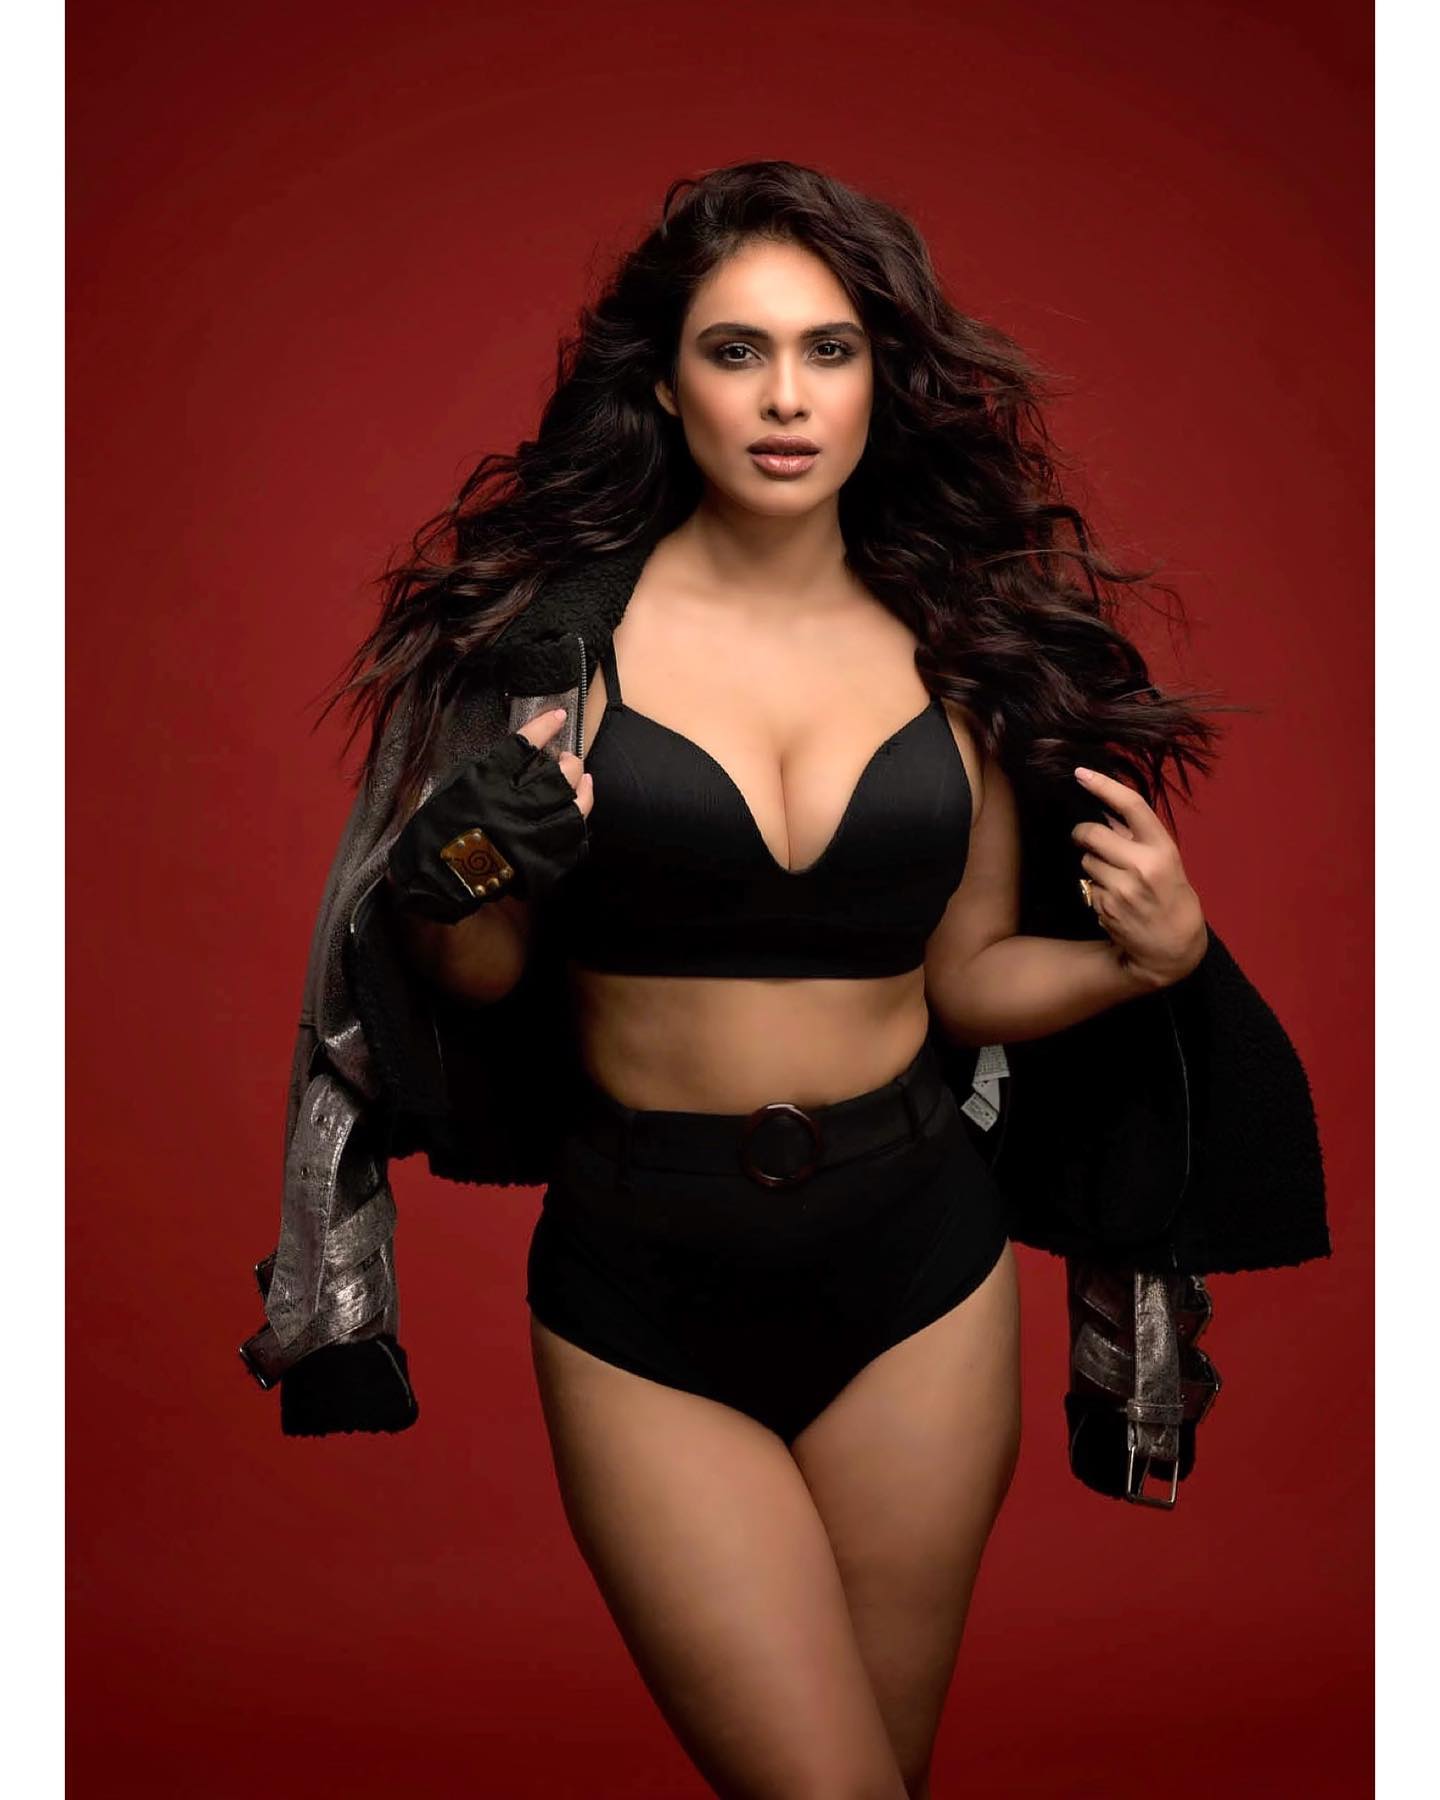 Neha Malika looks smoking hot in a black bikini top